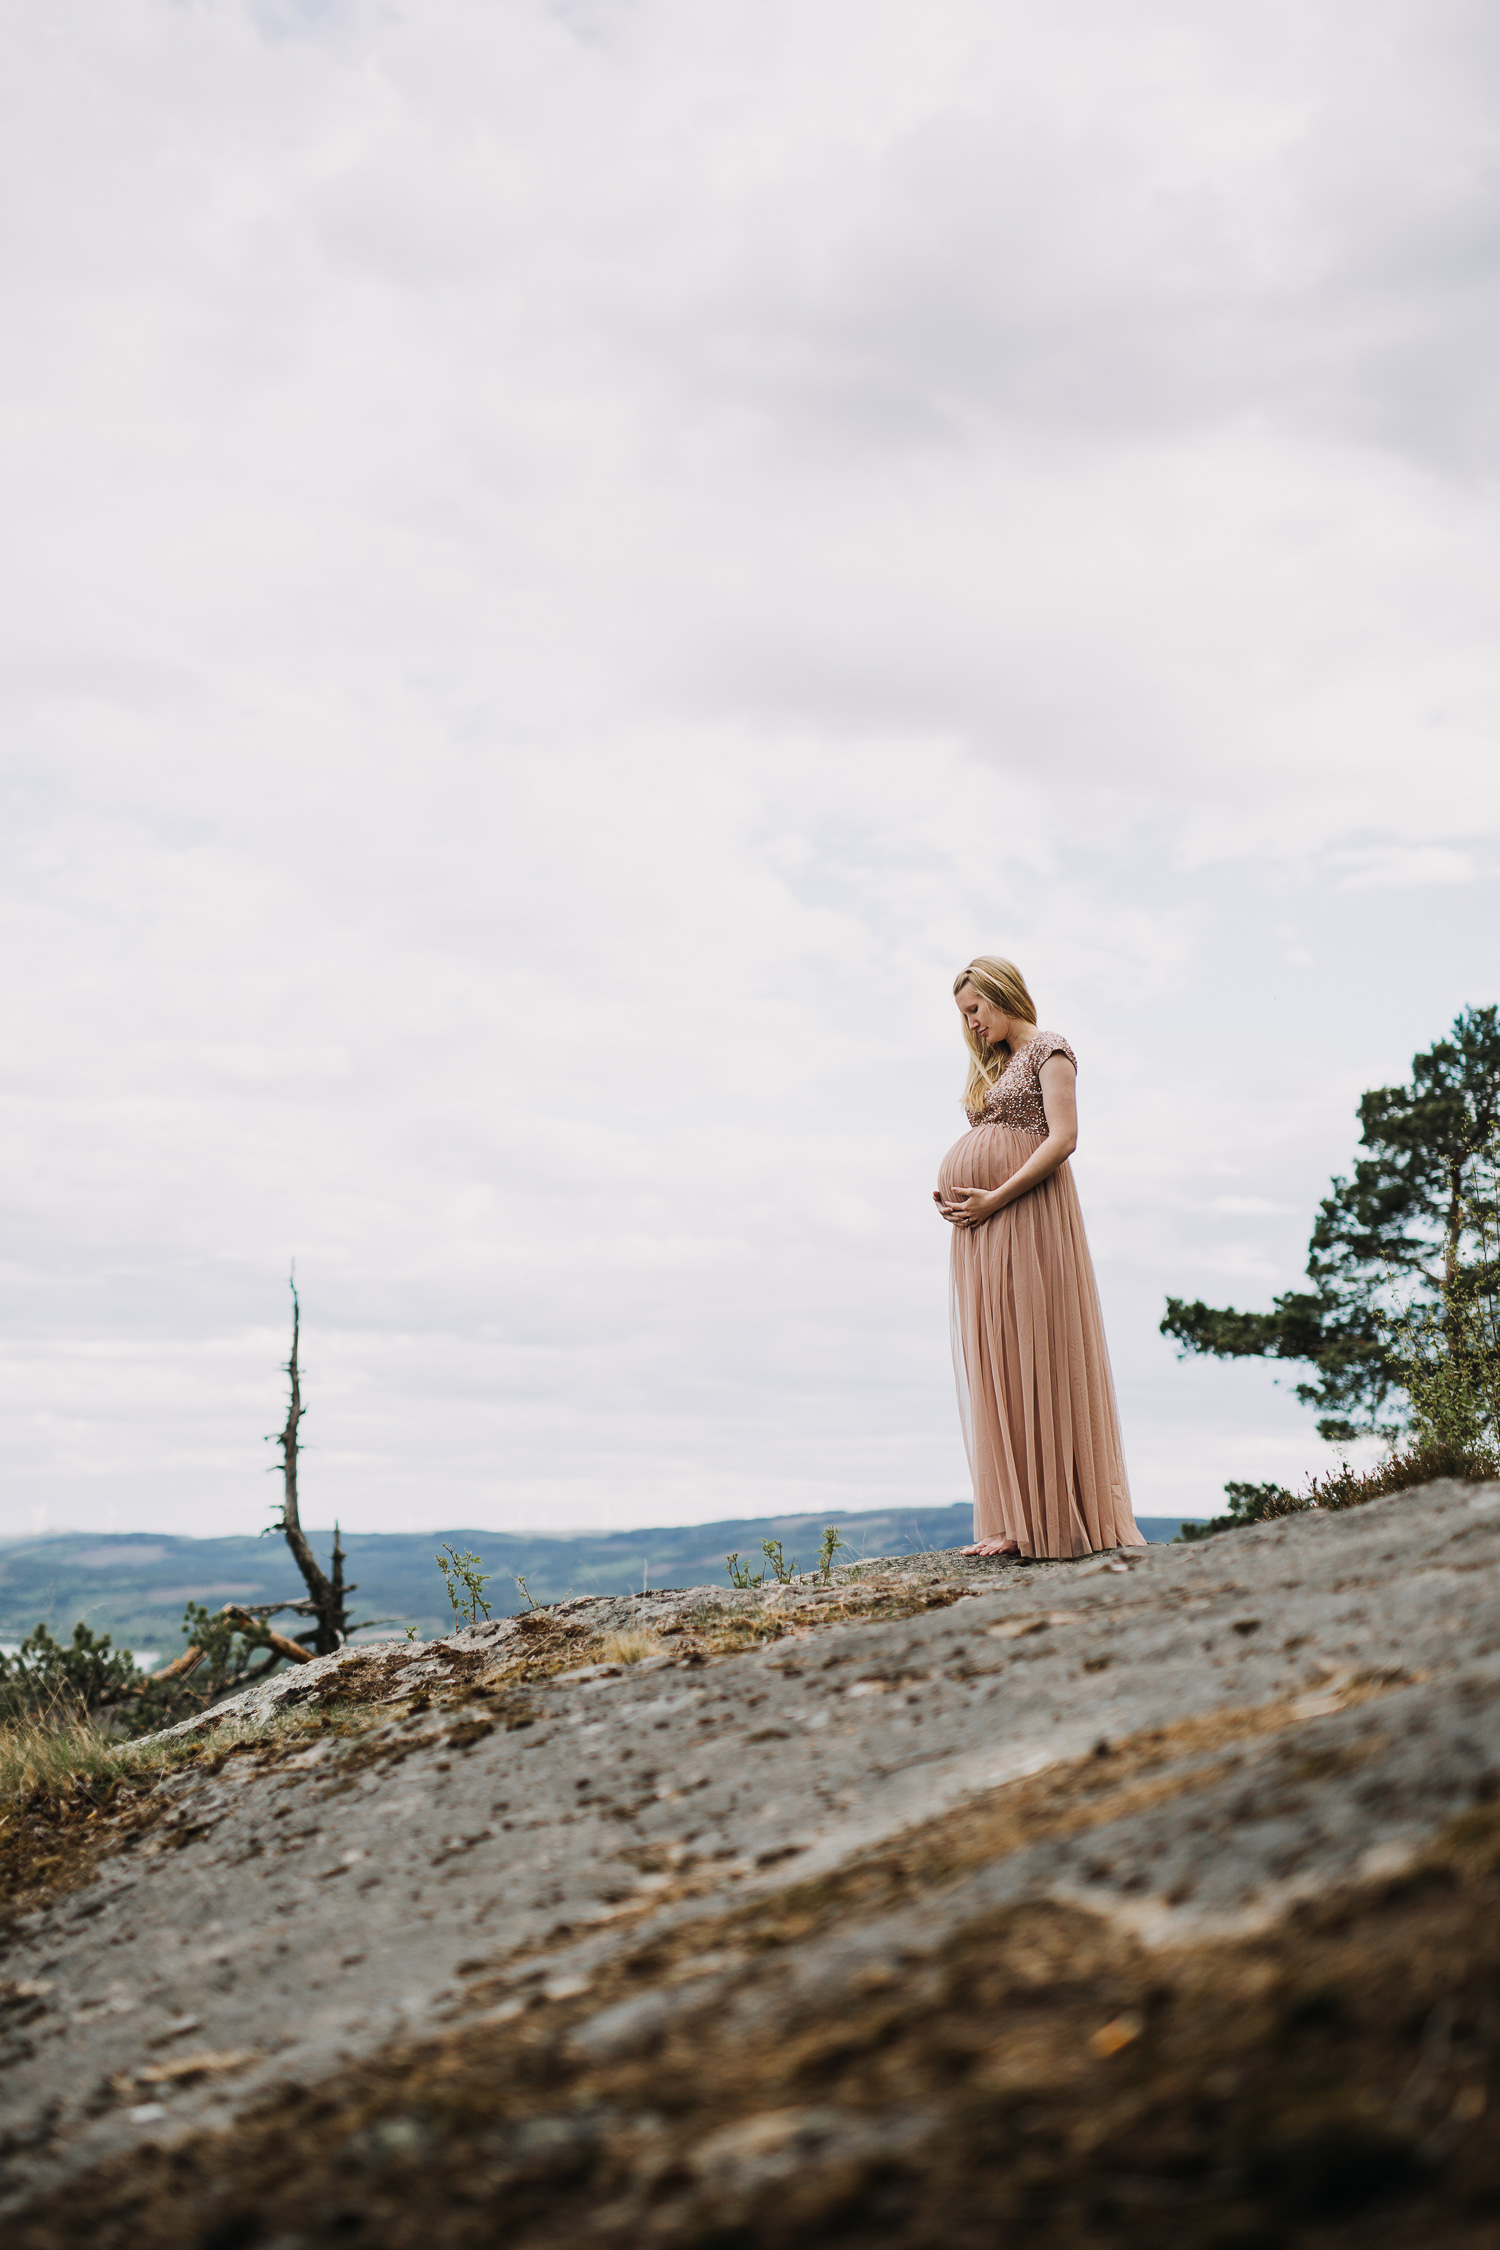 Gravidfotografering Järvsö Fotograf Yohanna Mårtensson